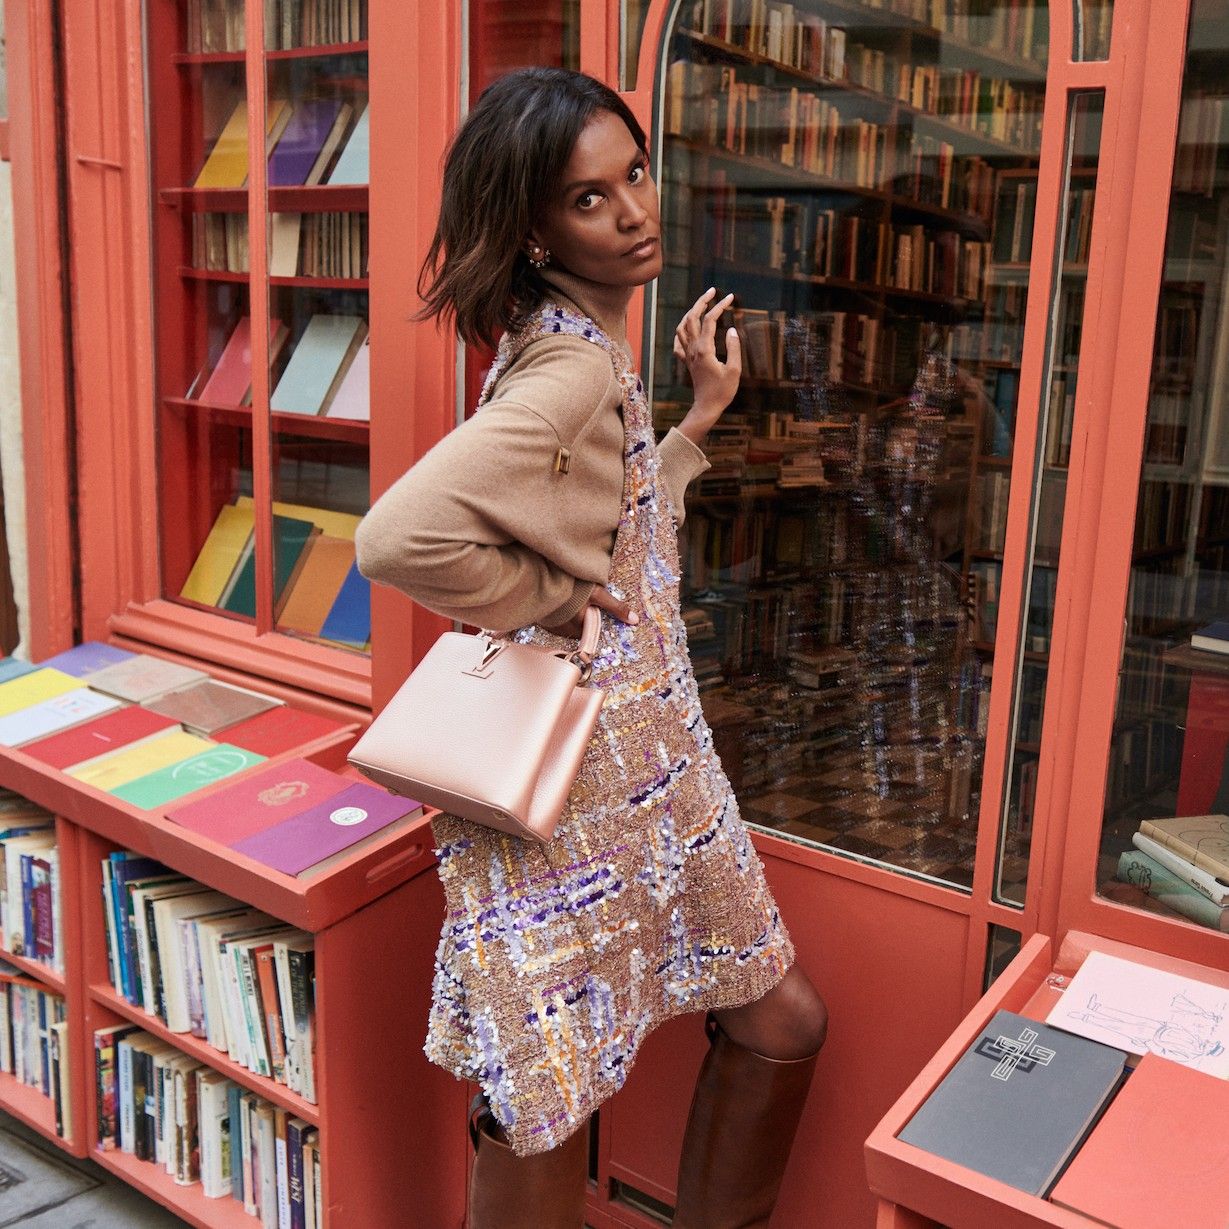 Louis Vuitton adapta su emblemático bolso a la mujer del presente